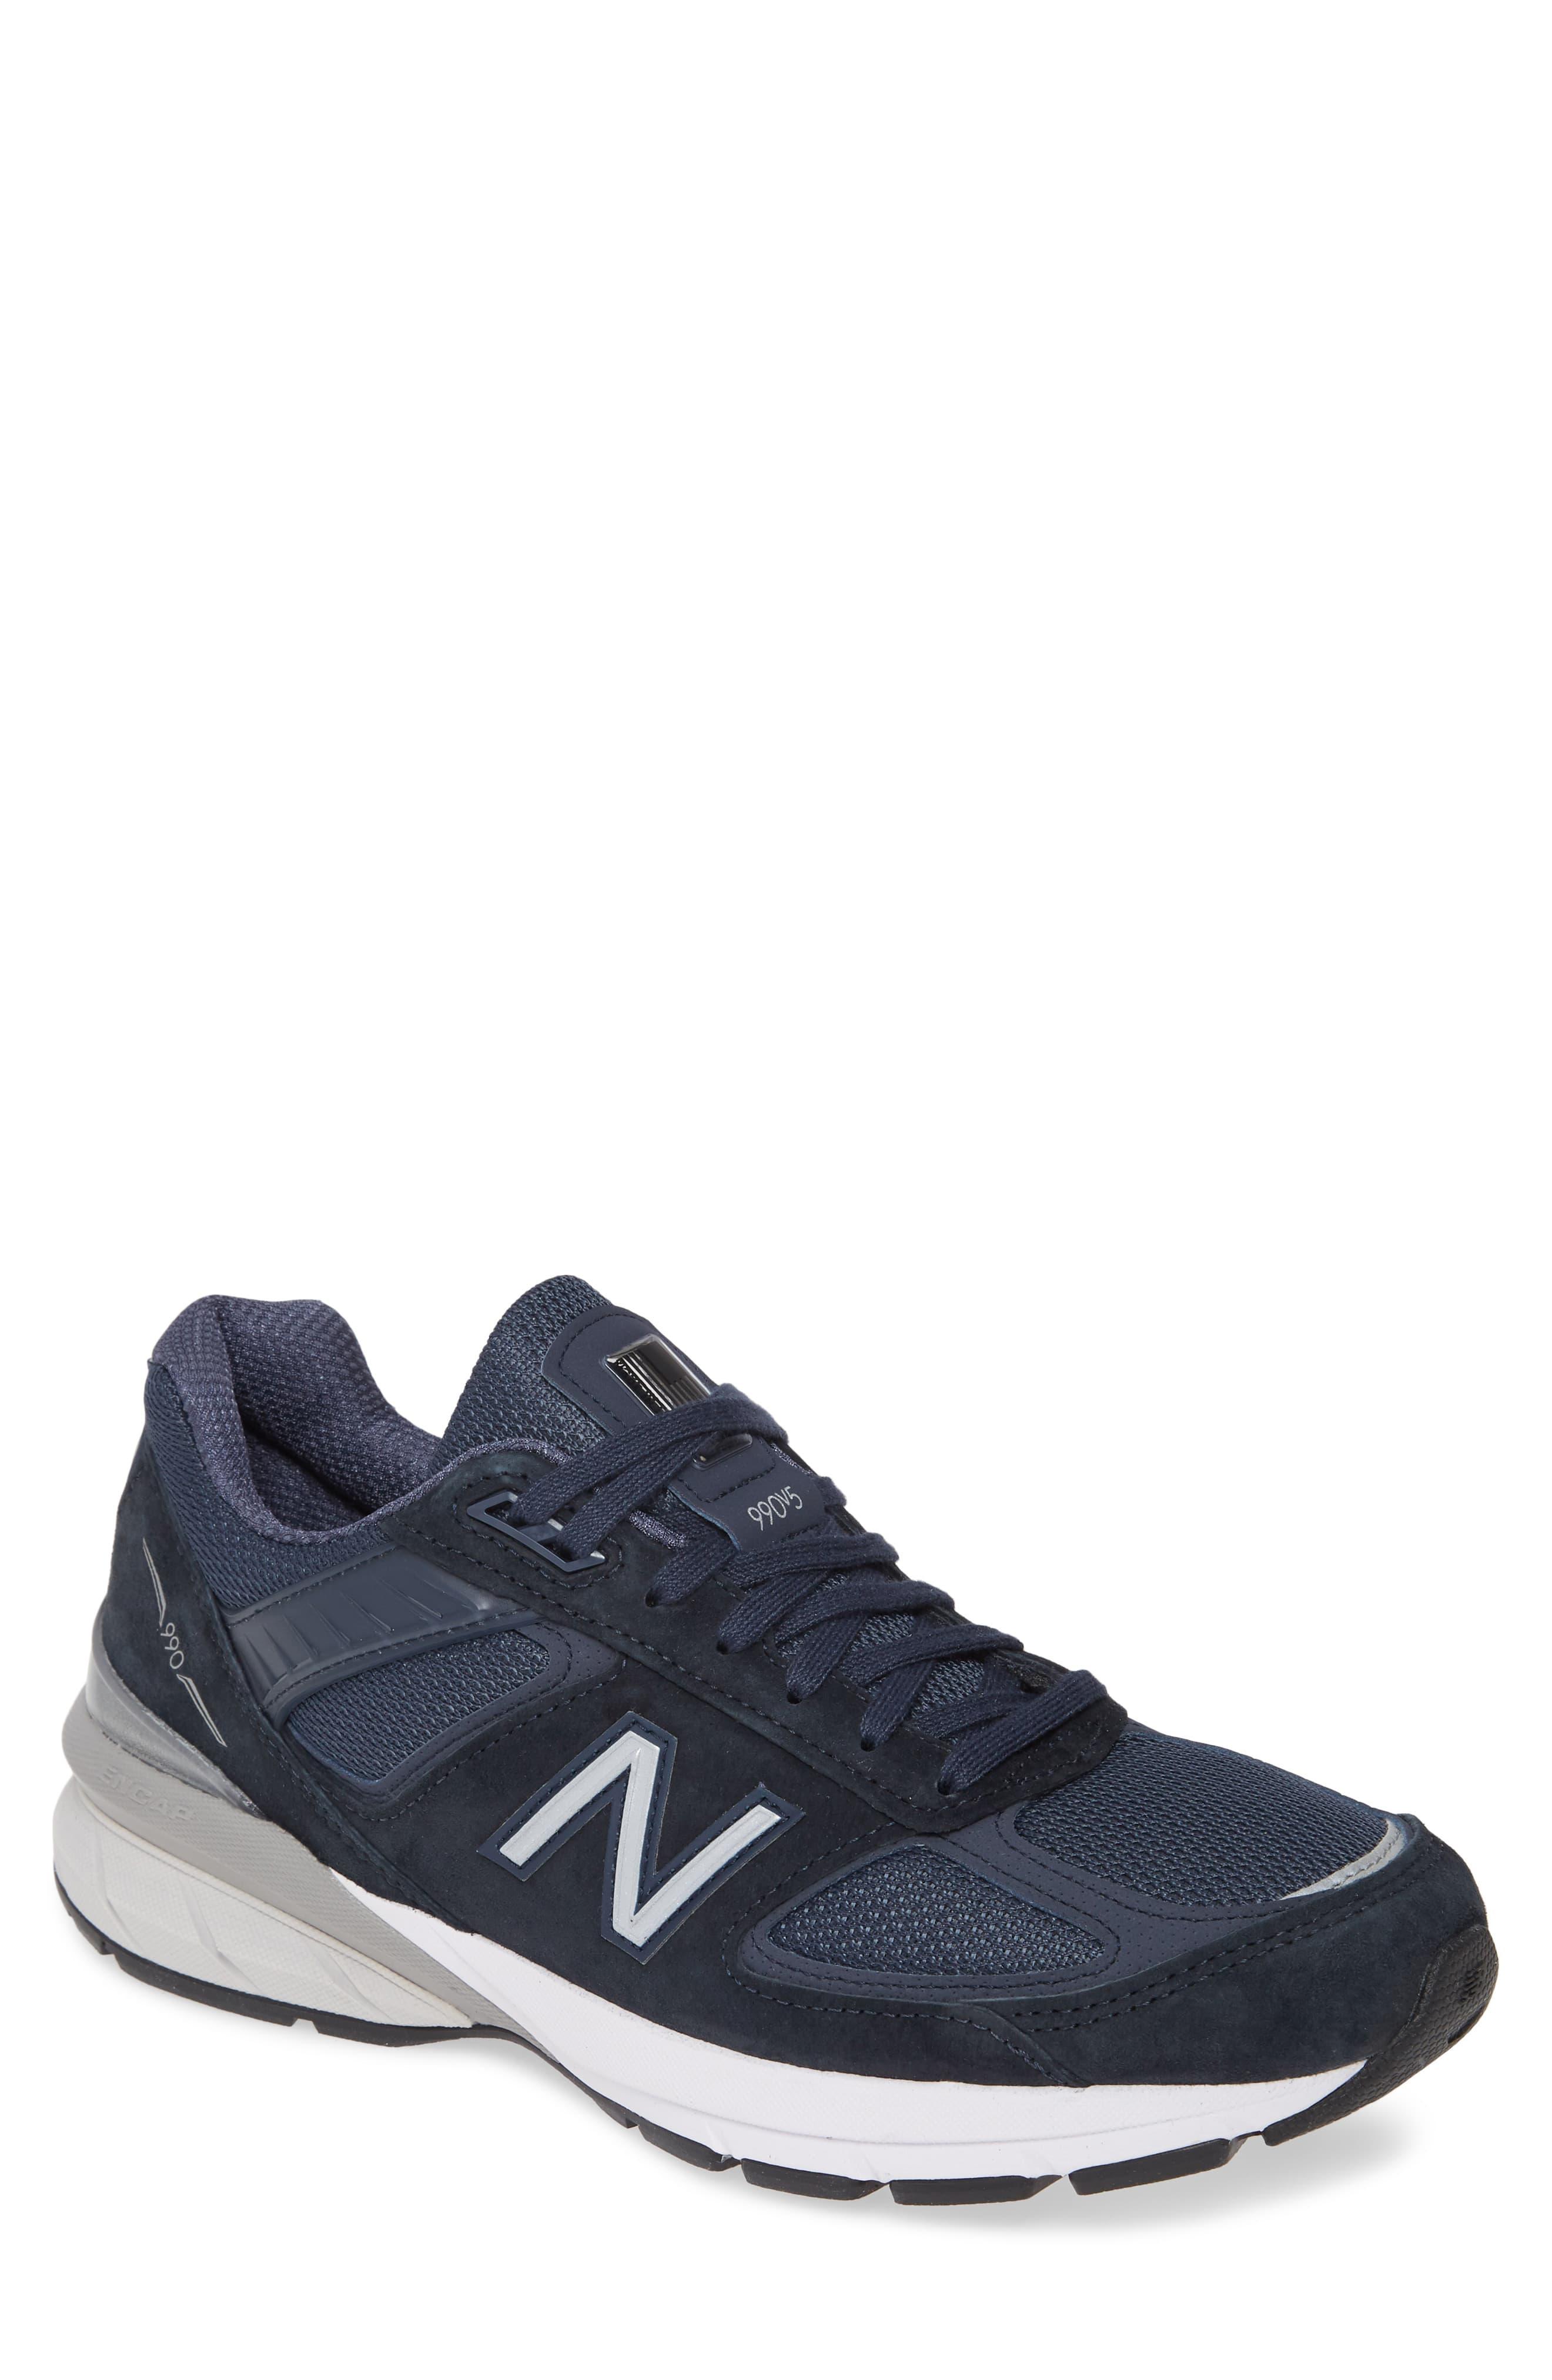 New Balance 990 V5 Running Shoe in Blue for Men - Lyst